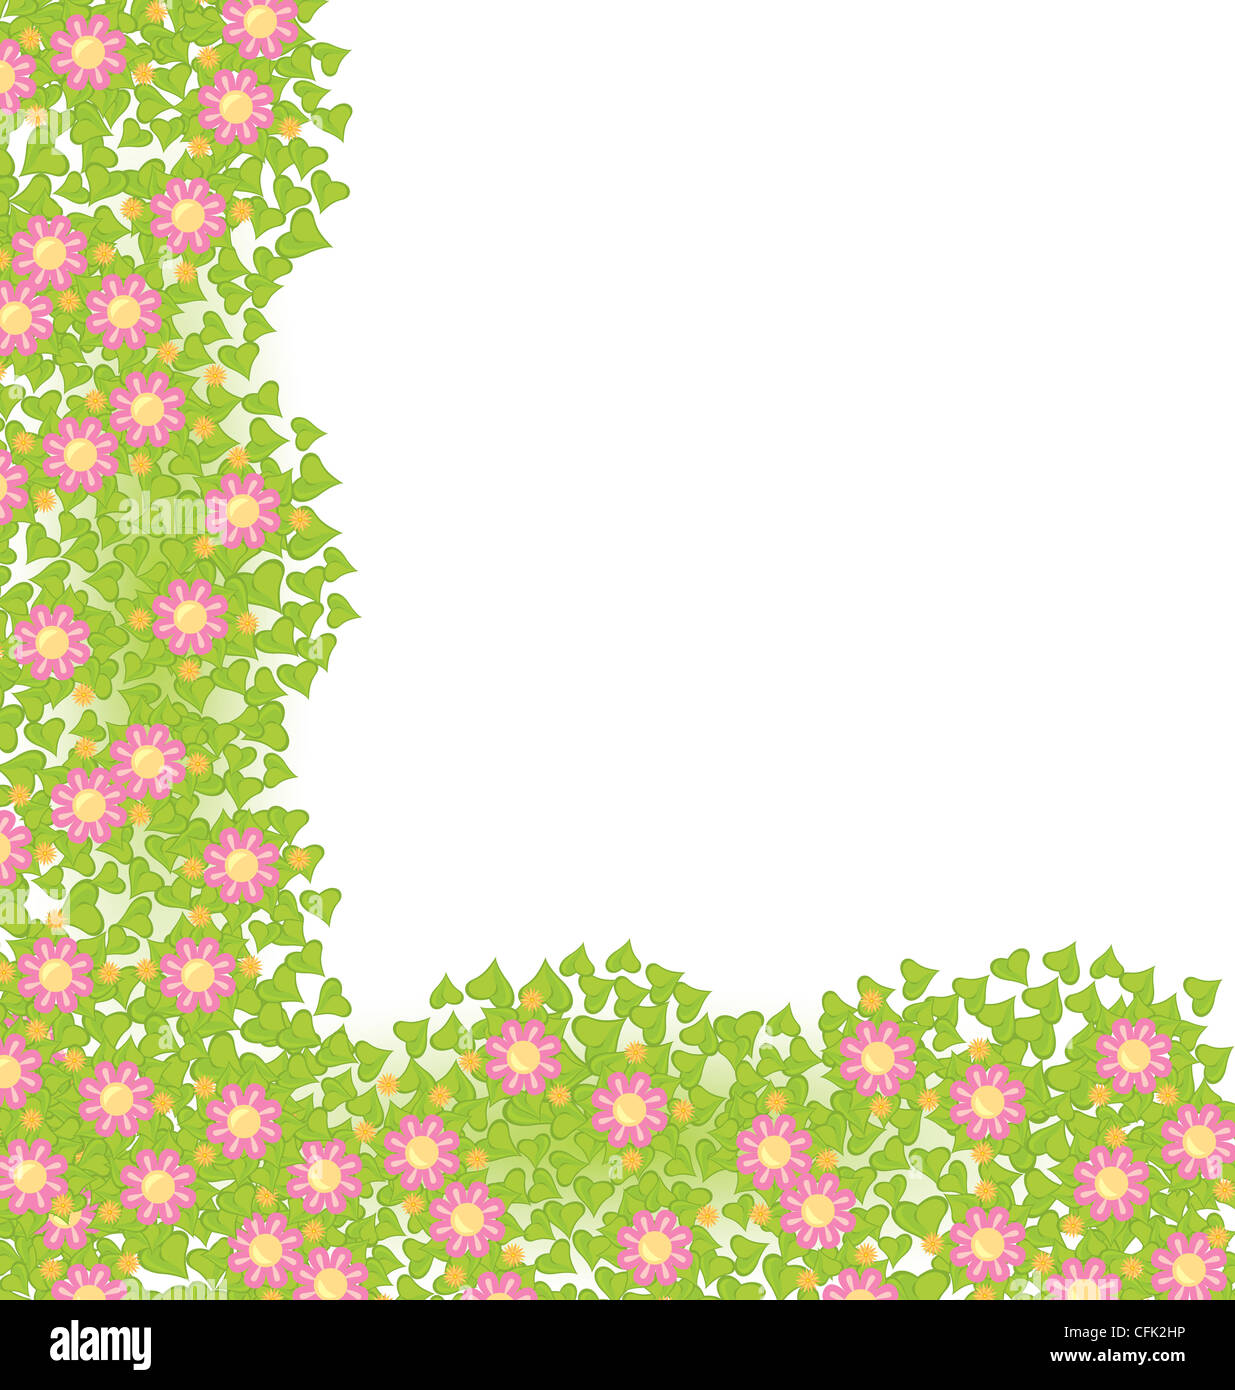 L'élément d'angle de décoration avec des fleurs roses sur feuilles vertes vector illustration Banque D'Images